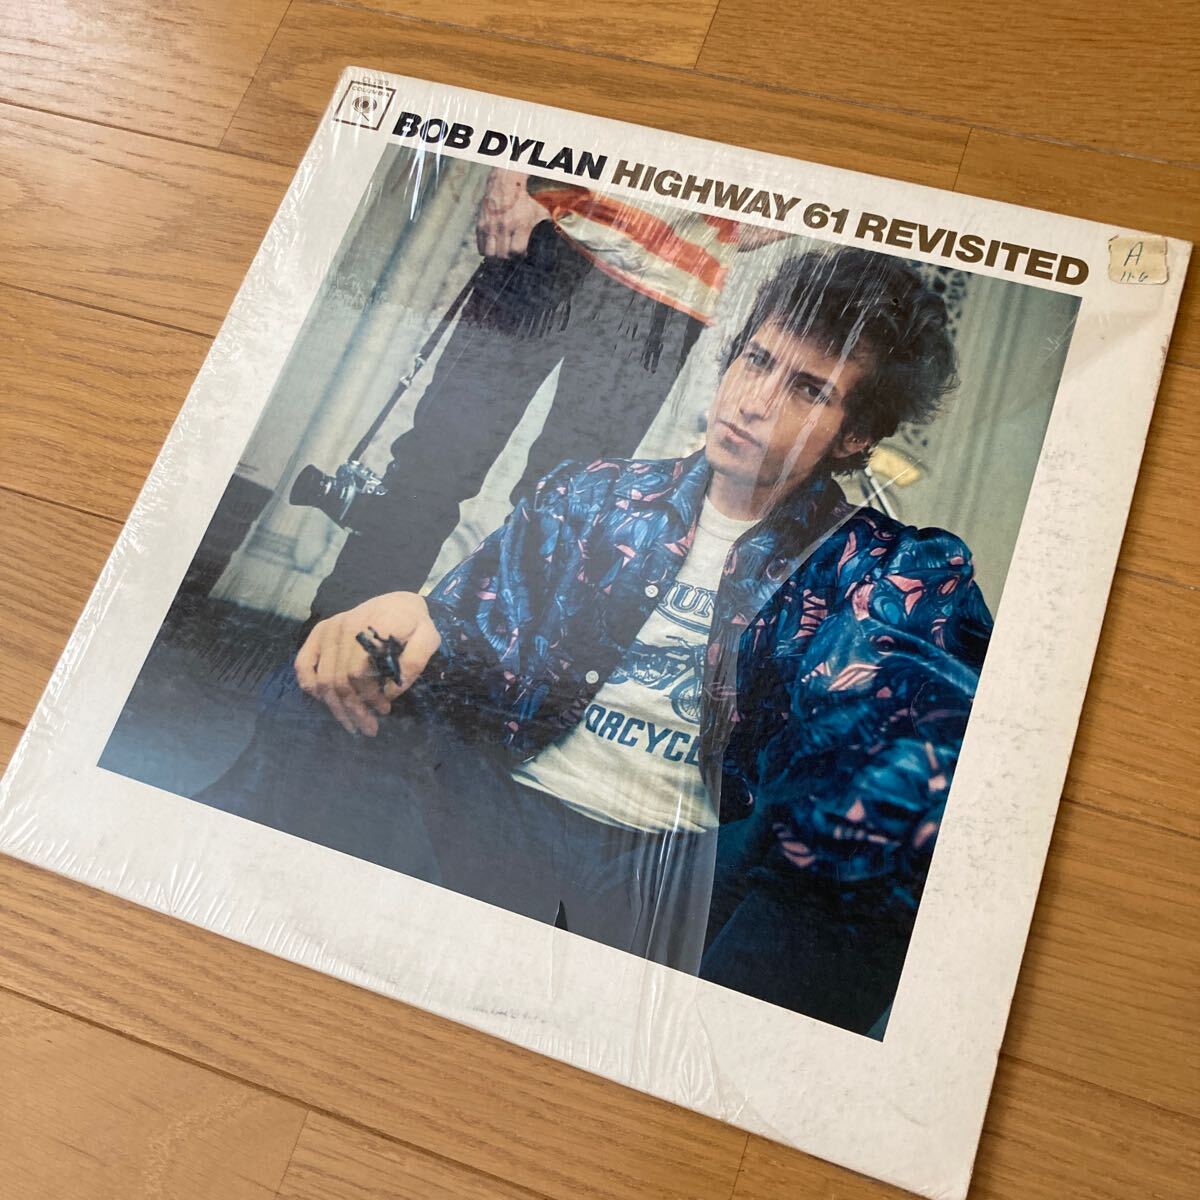 Bob Dylan 追憶のハイウェイ61 米国オリジナルモノラル盤 Highway 61 Revisited  ボブディラン 両マト1Aの画像2